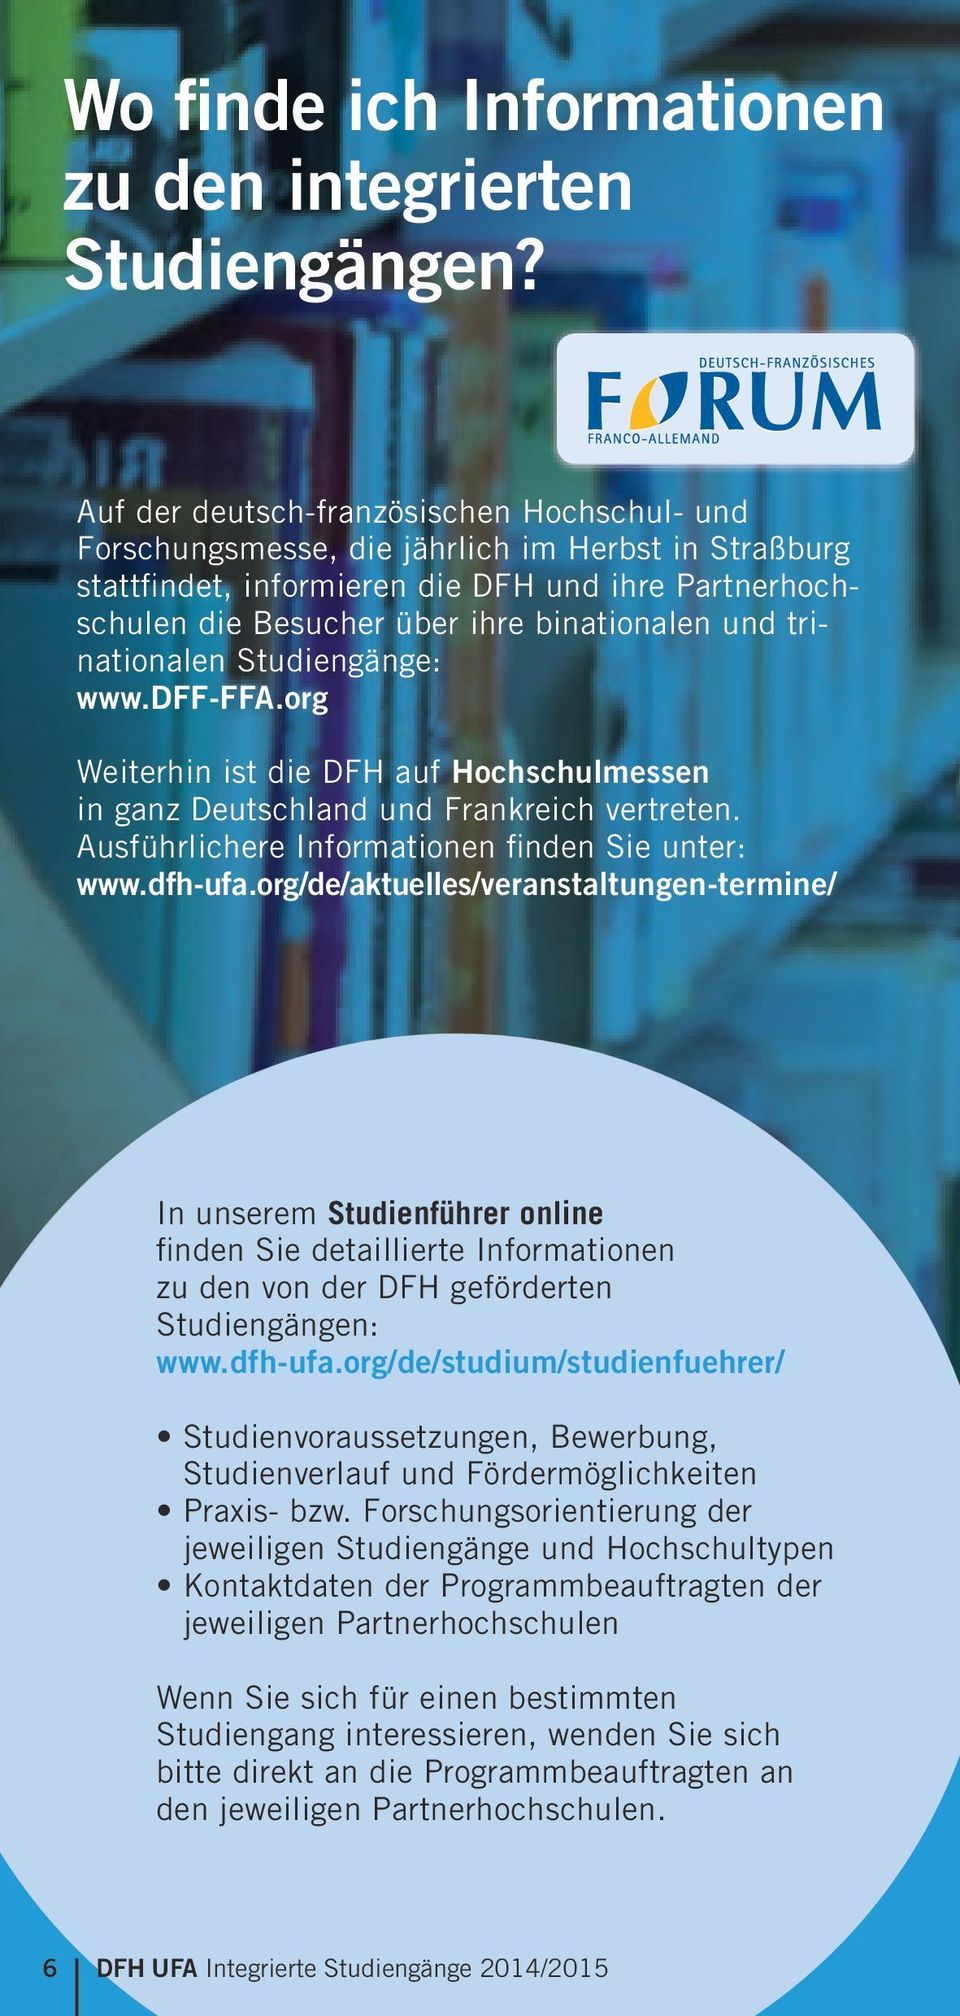 trinationalen : www.dff-ffa.org Weiterhin ist die DFH auf Hochschulmessen in ganz Deutschland und Frankreich vertreten. Ausführlichere Informationen finden Sie unter: www.dfh-ufa.